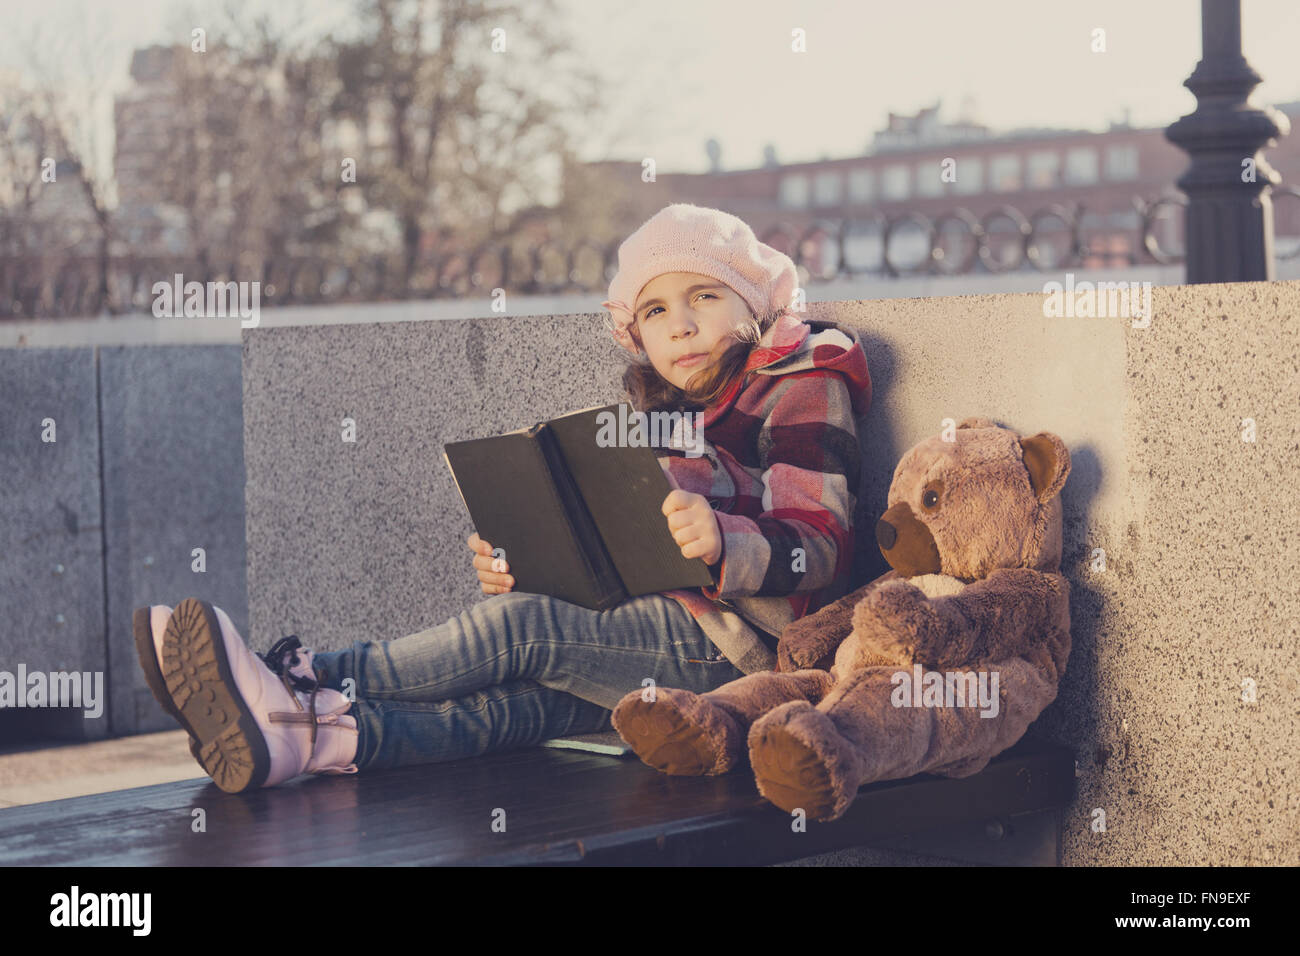 Bambina si siede su una panchina e legge il libro di un giocattolo bear.Elaborazione: tonificante e in colori caldi Foto Stock